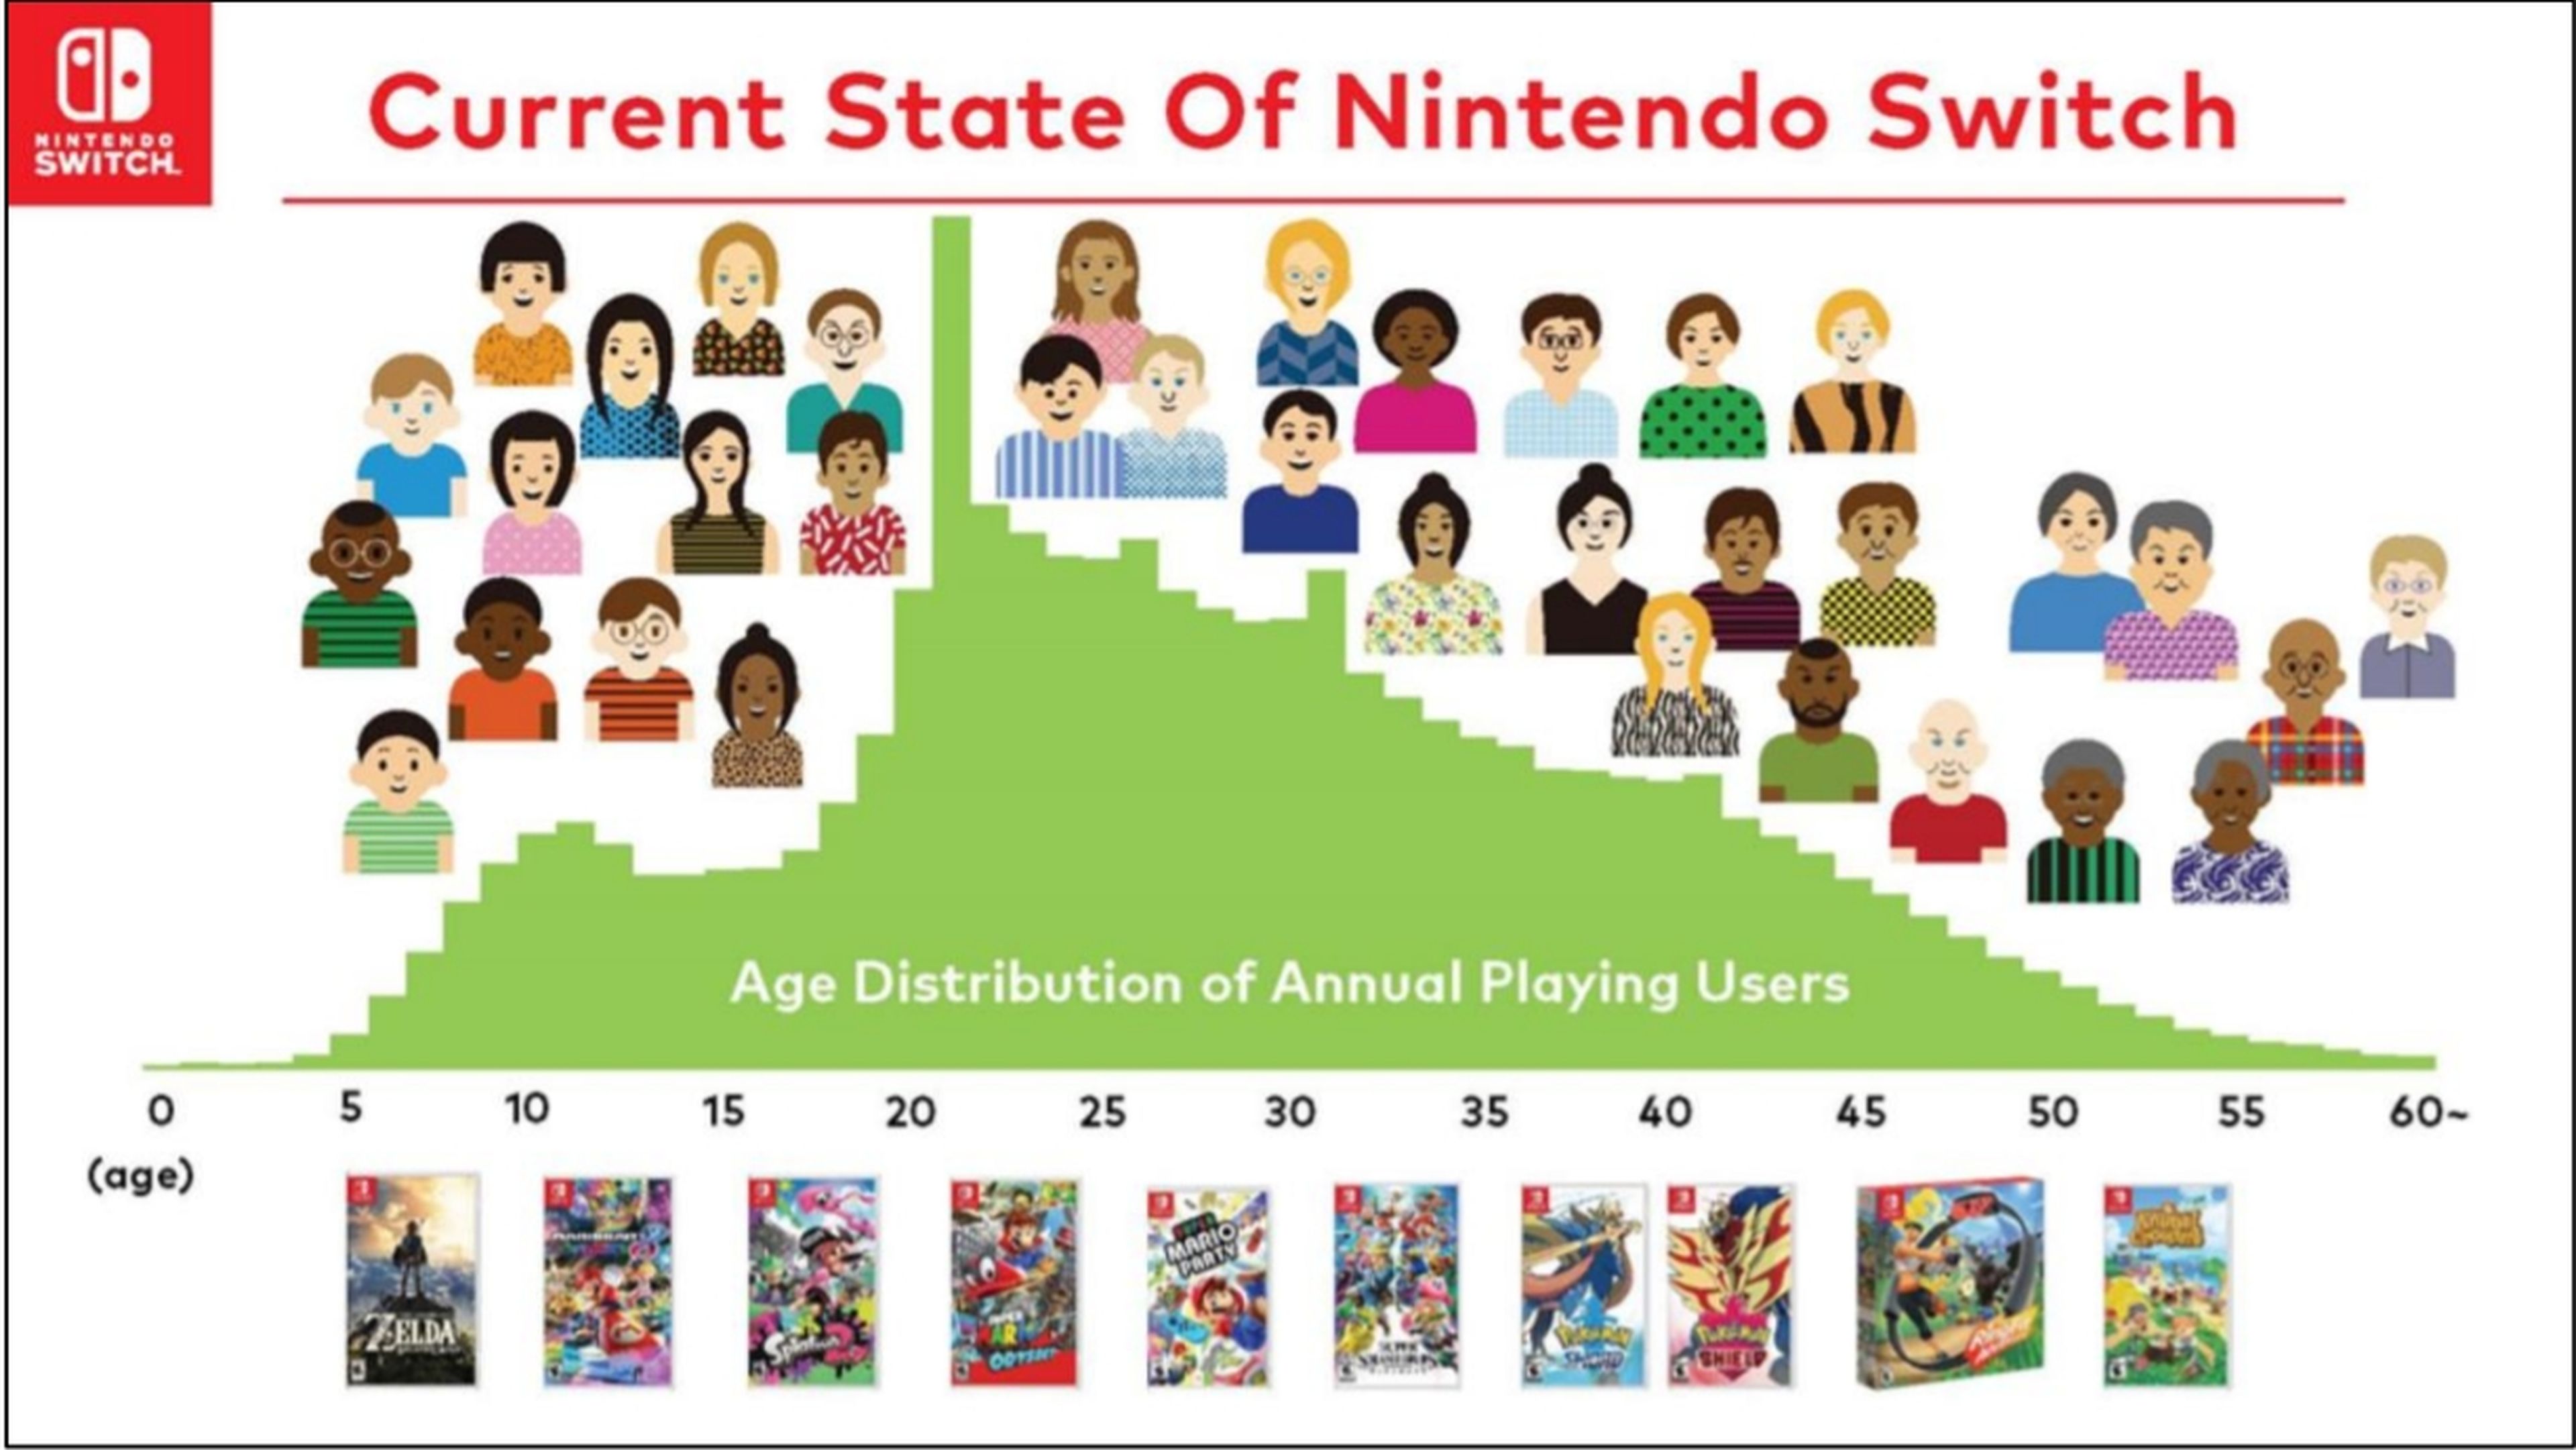 Nintendo revela la edad de los jugadores de Nintendo Switch, y los de 41 años superan a los menores de edad, entre otras curiosidades